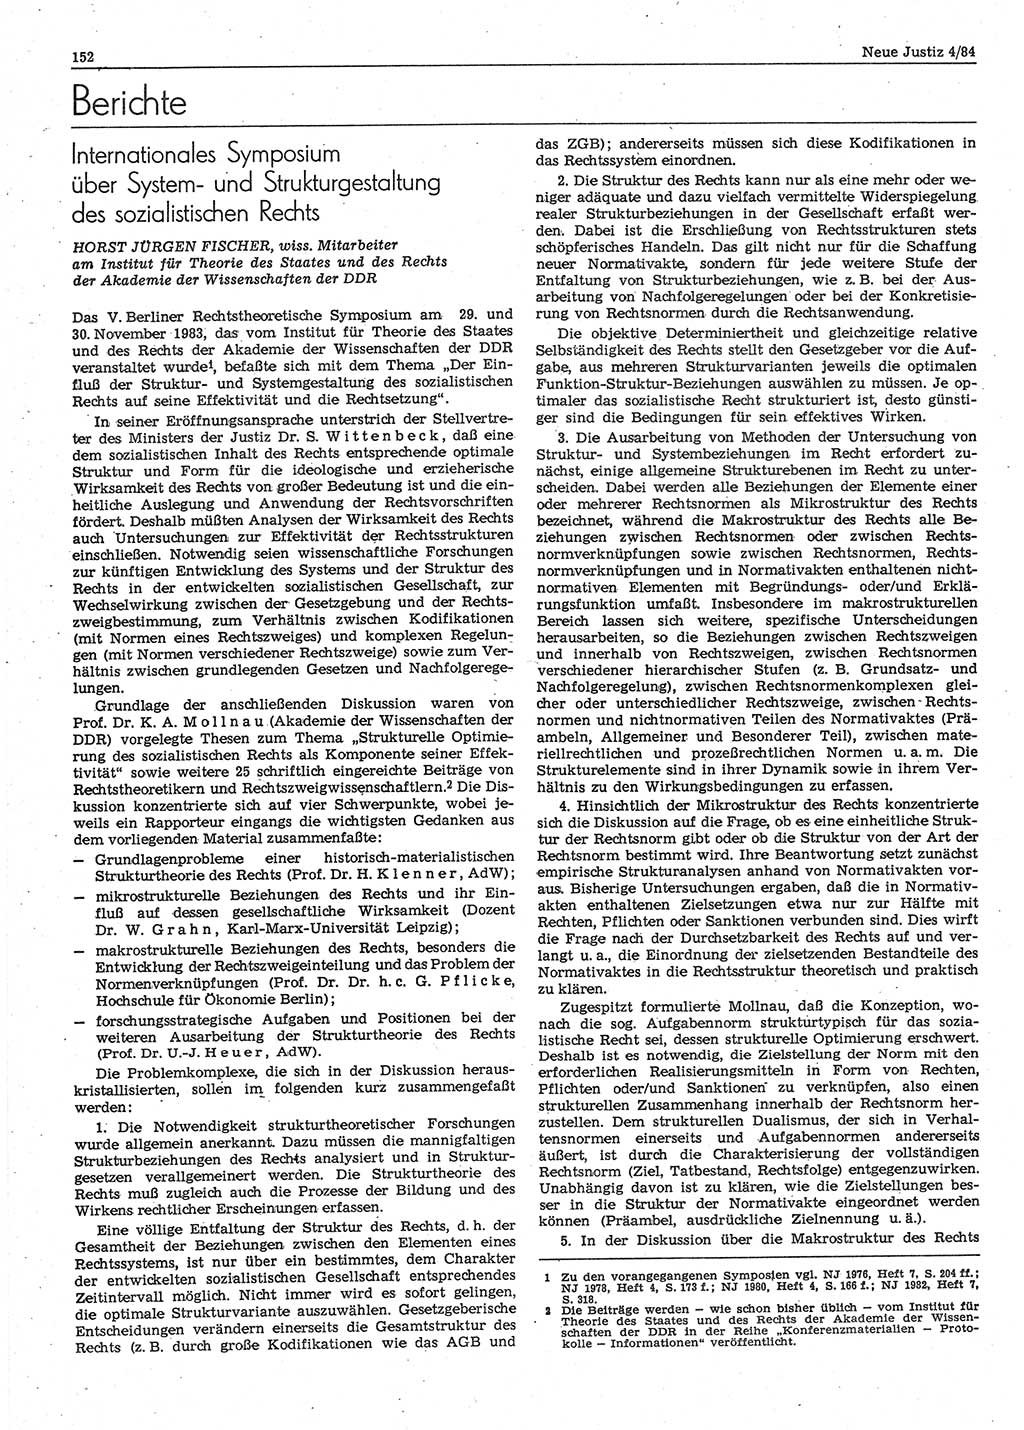 Neue Justiz (NJ), Zeitschrift für sozialistisches Recht und Gesetzlichkeit [Deutsche Demokratische Republik (DDR)], 38. Jahrgang 1984, Seite 152 (NJ DDR 1984, S. 152)